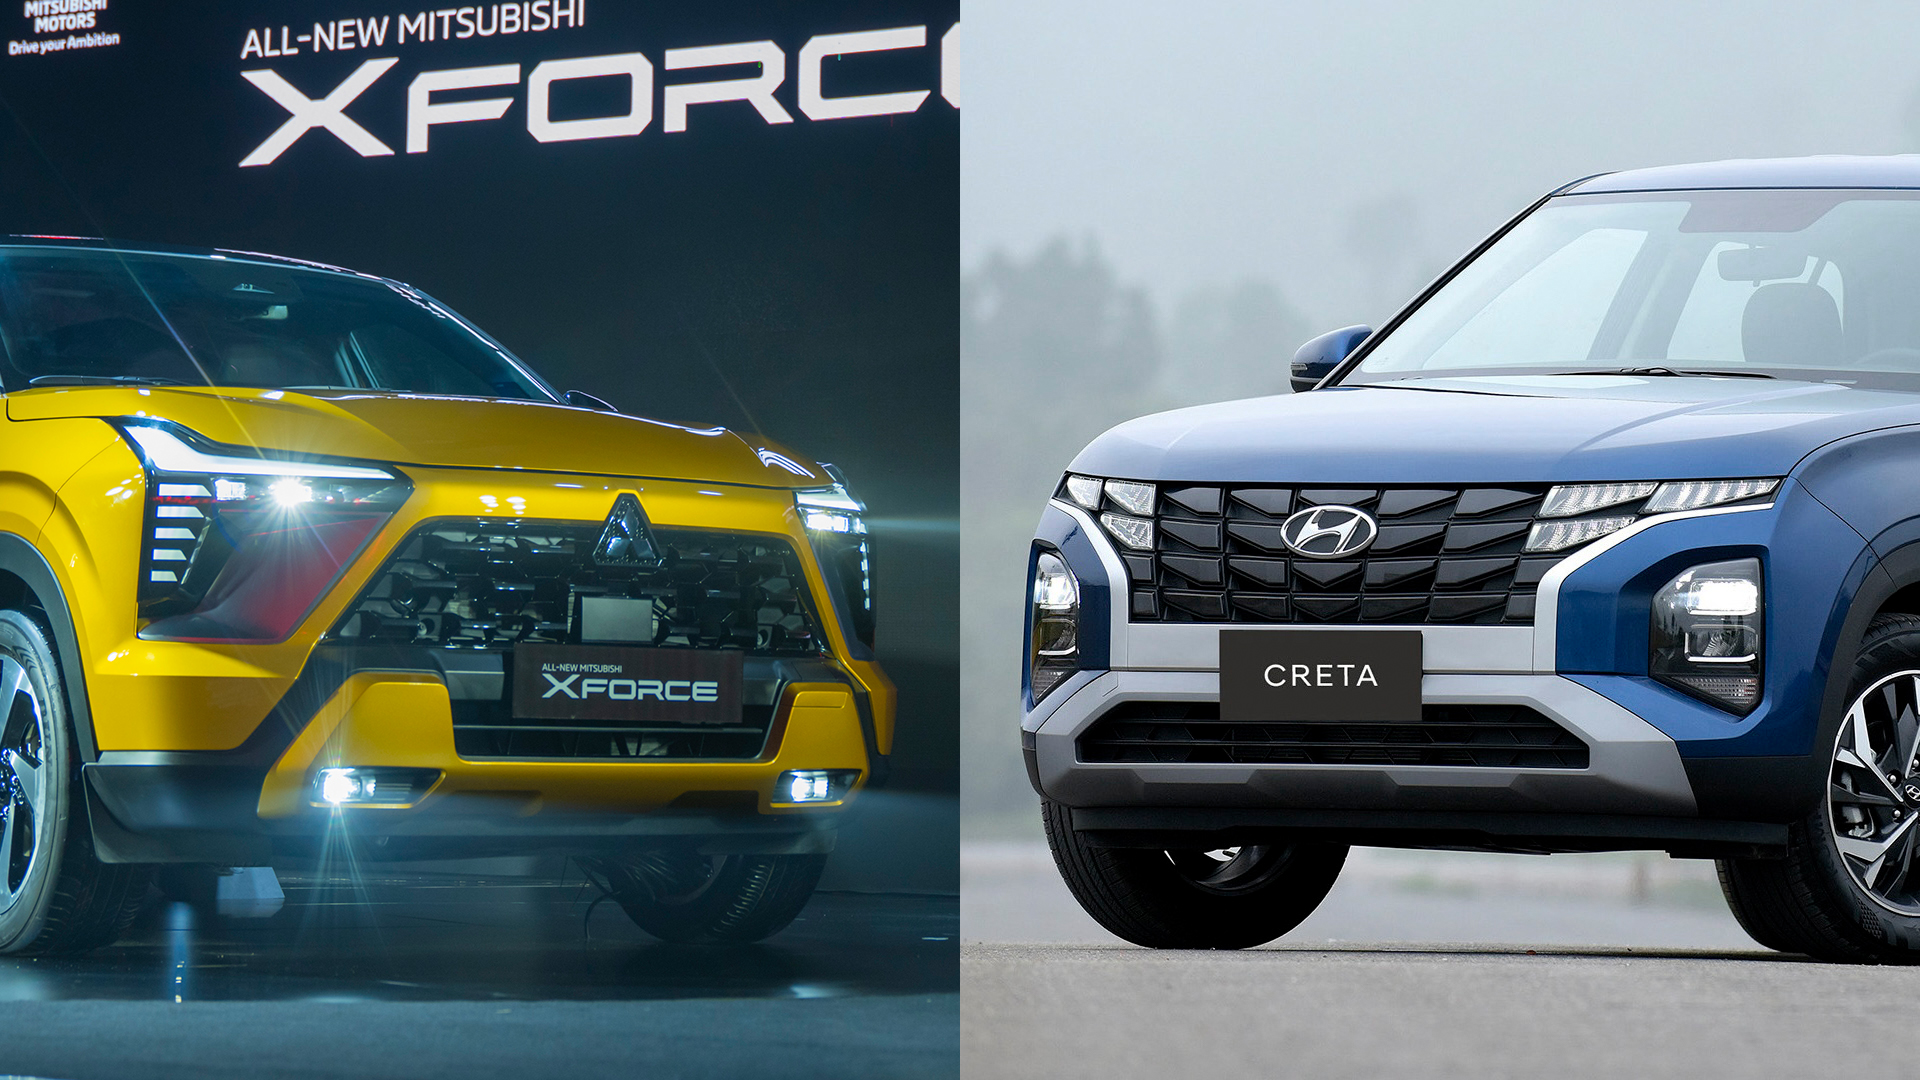 Đánh giá so sánh giữa Mitsubishi Xforce và  Hyundai Creta